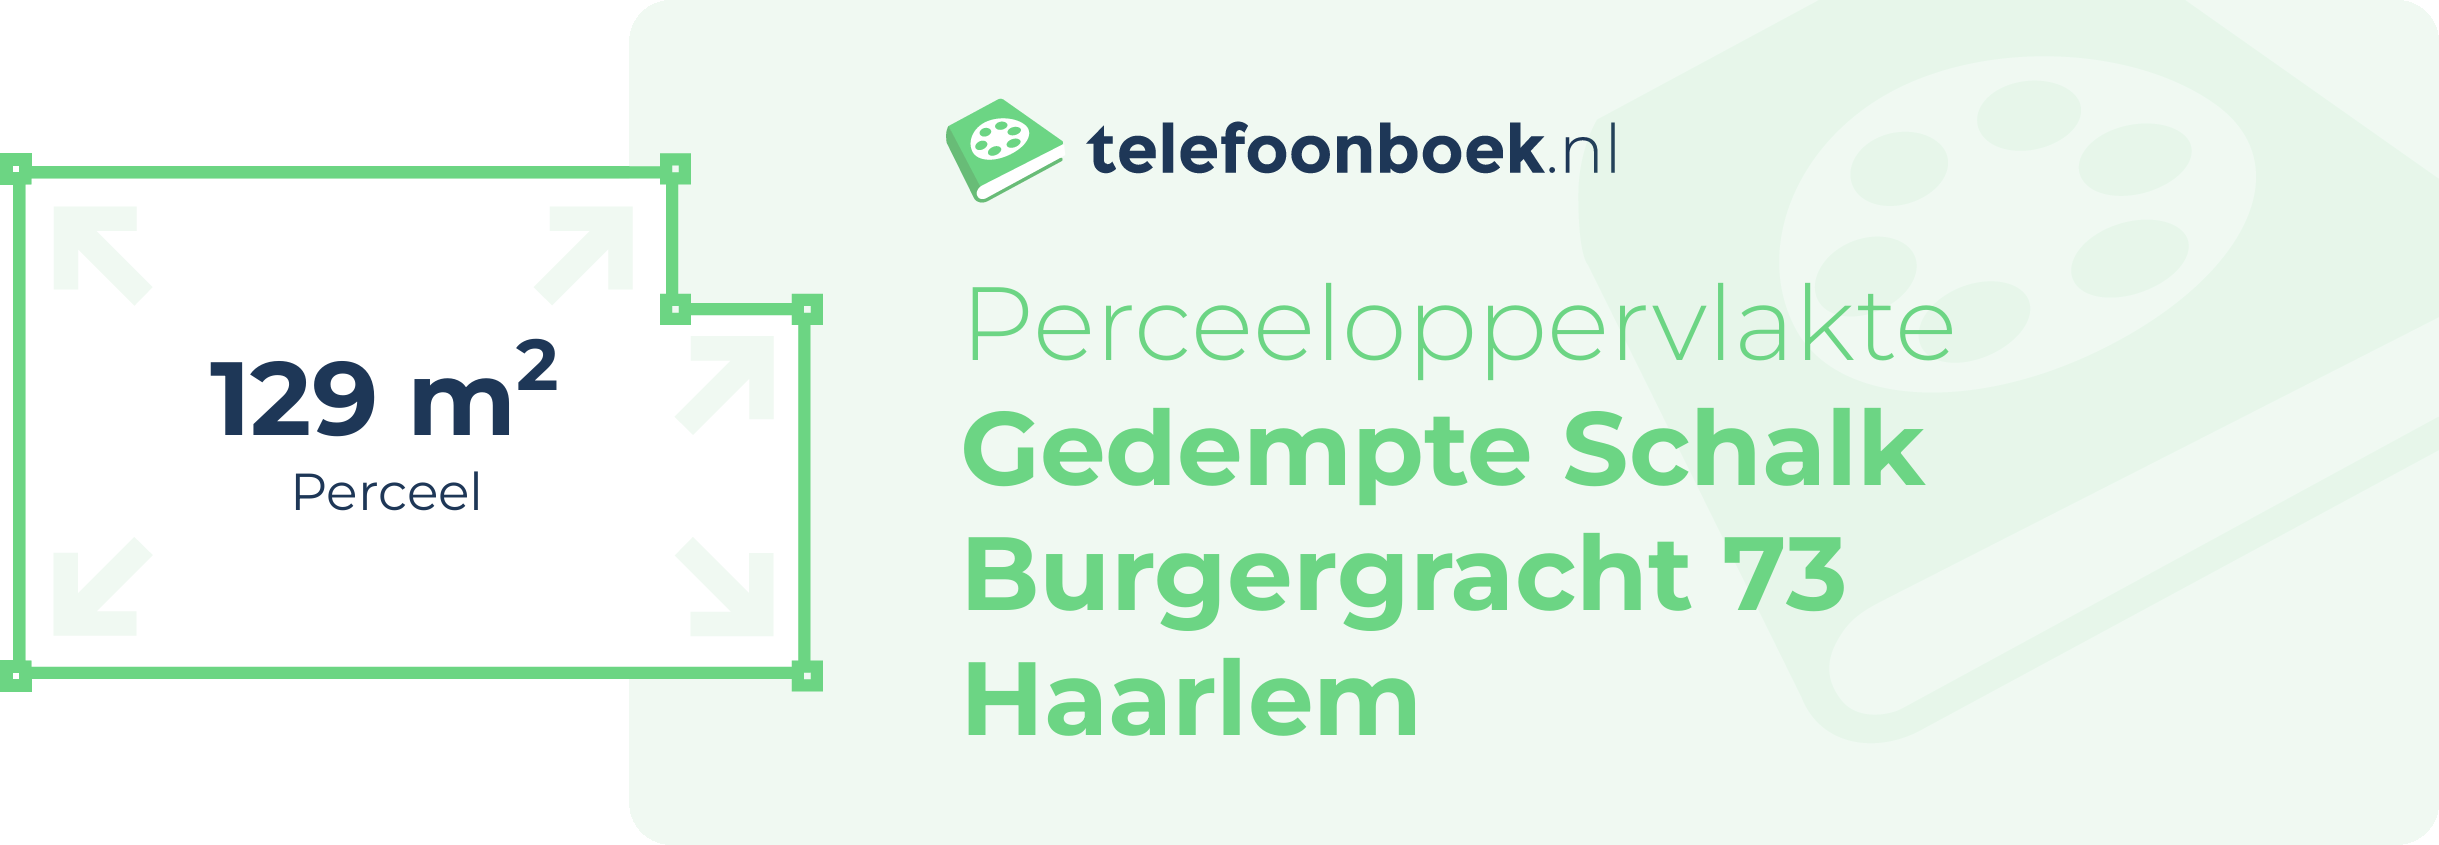 Perceeloppervlakte Gedempte Schalk Burgergracht 73 Haarlem